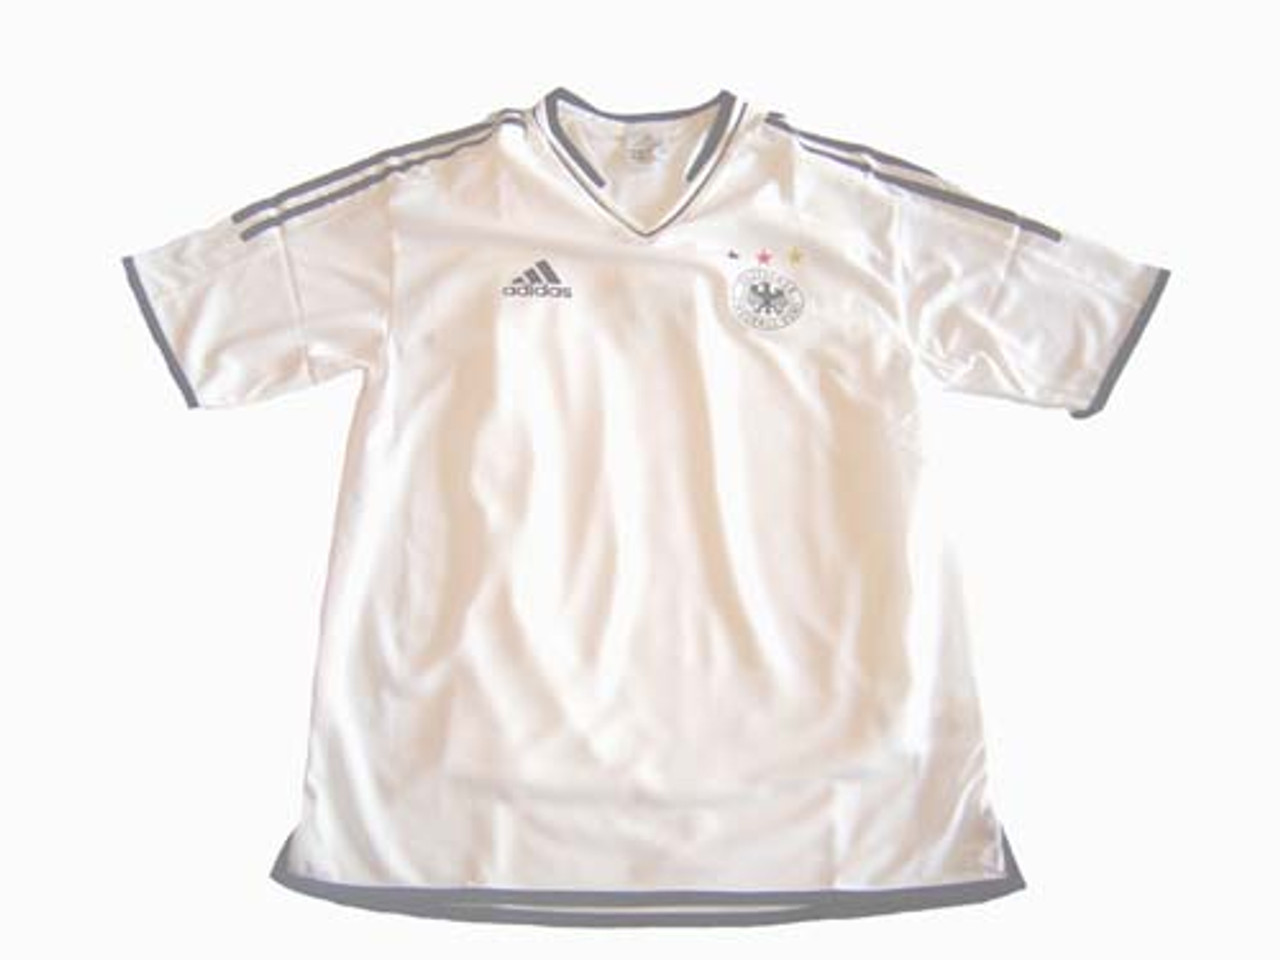 germany women's soccer jersey